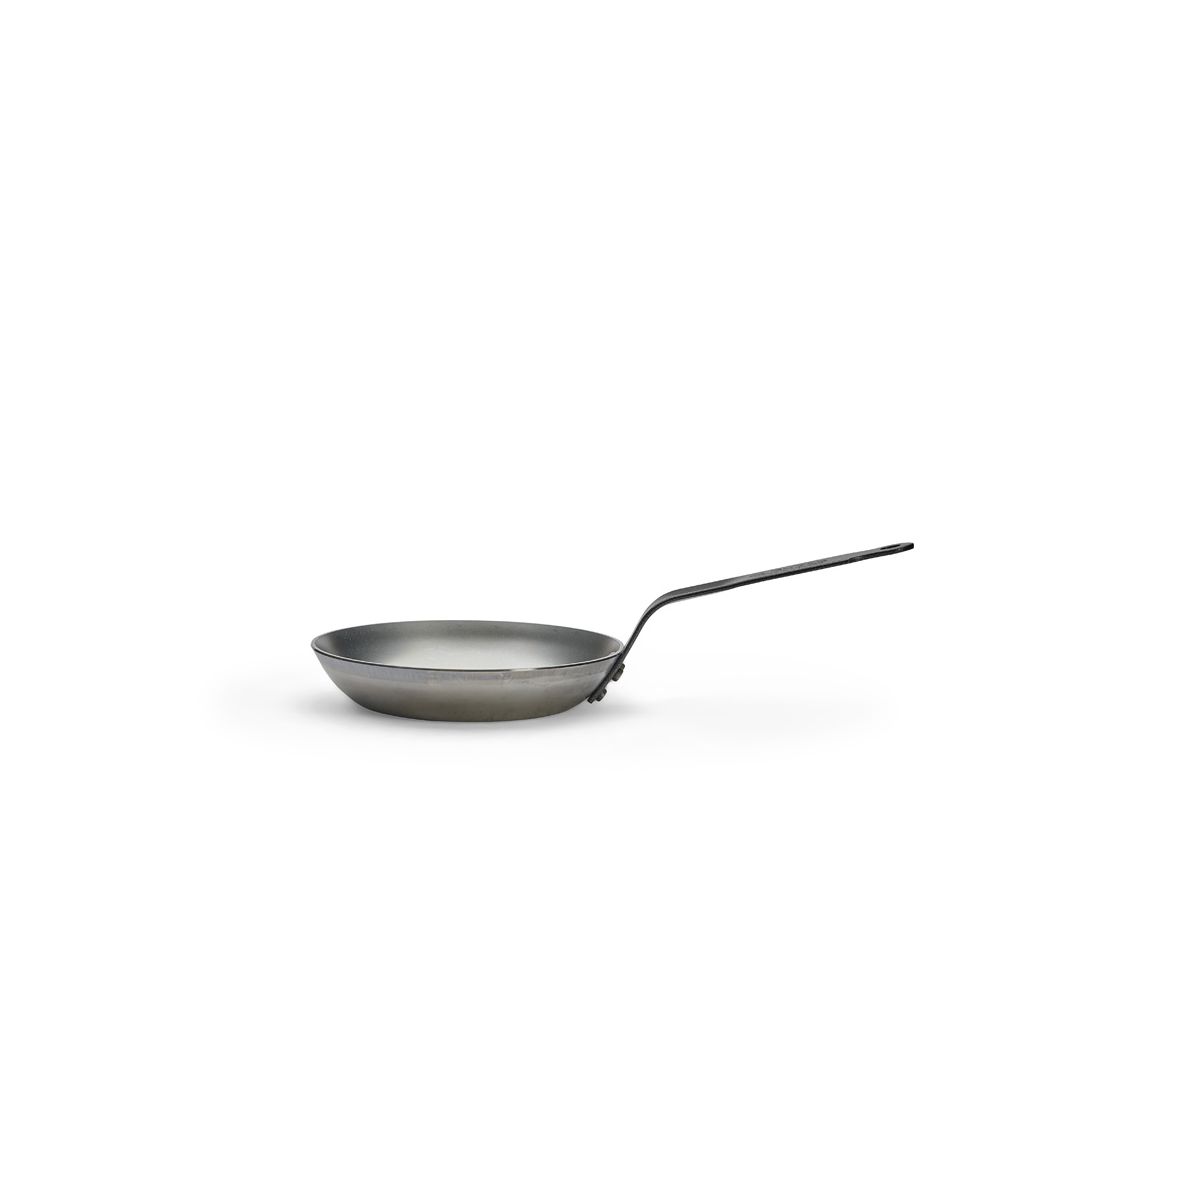 de Buyer Acier Carbone Plus-frying pan, 24cm 5113.24